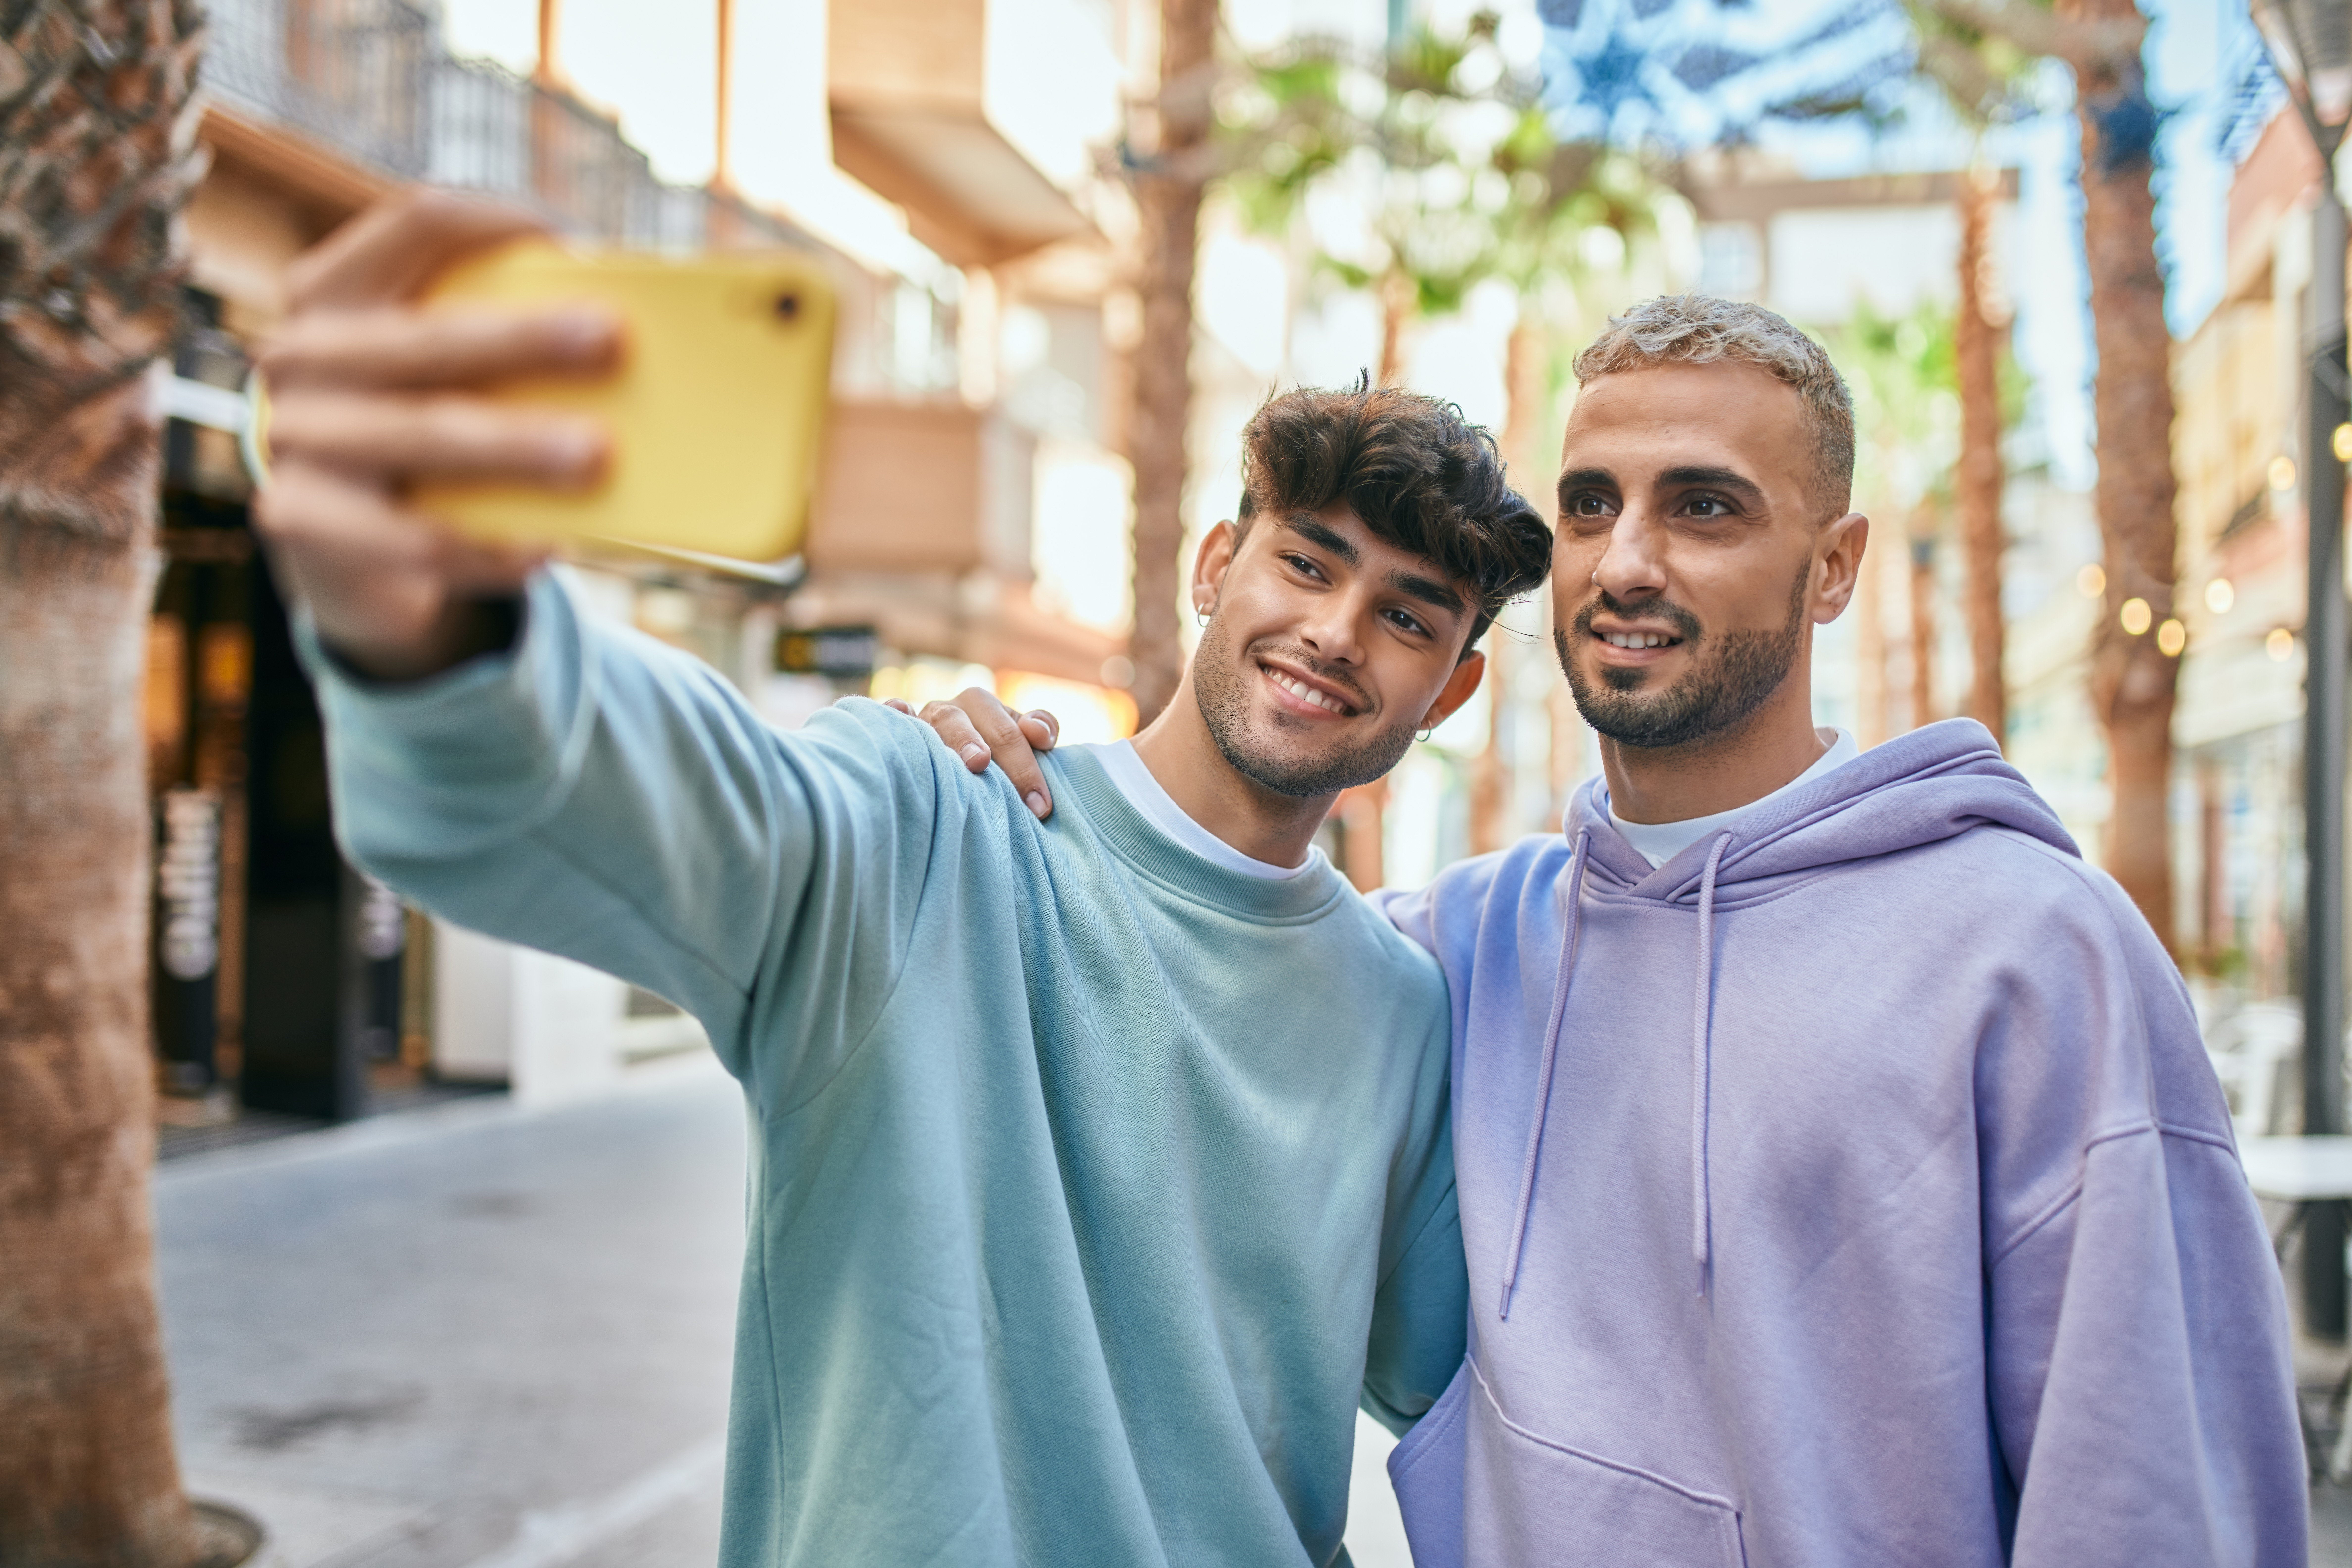 Zwei junge Männer machen ein gemeinsames Foto | Quelle: Shutterstock